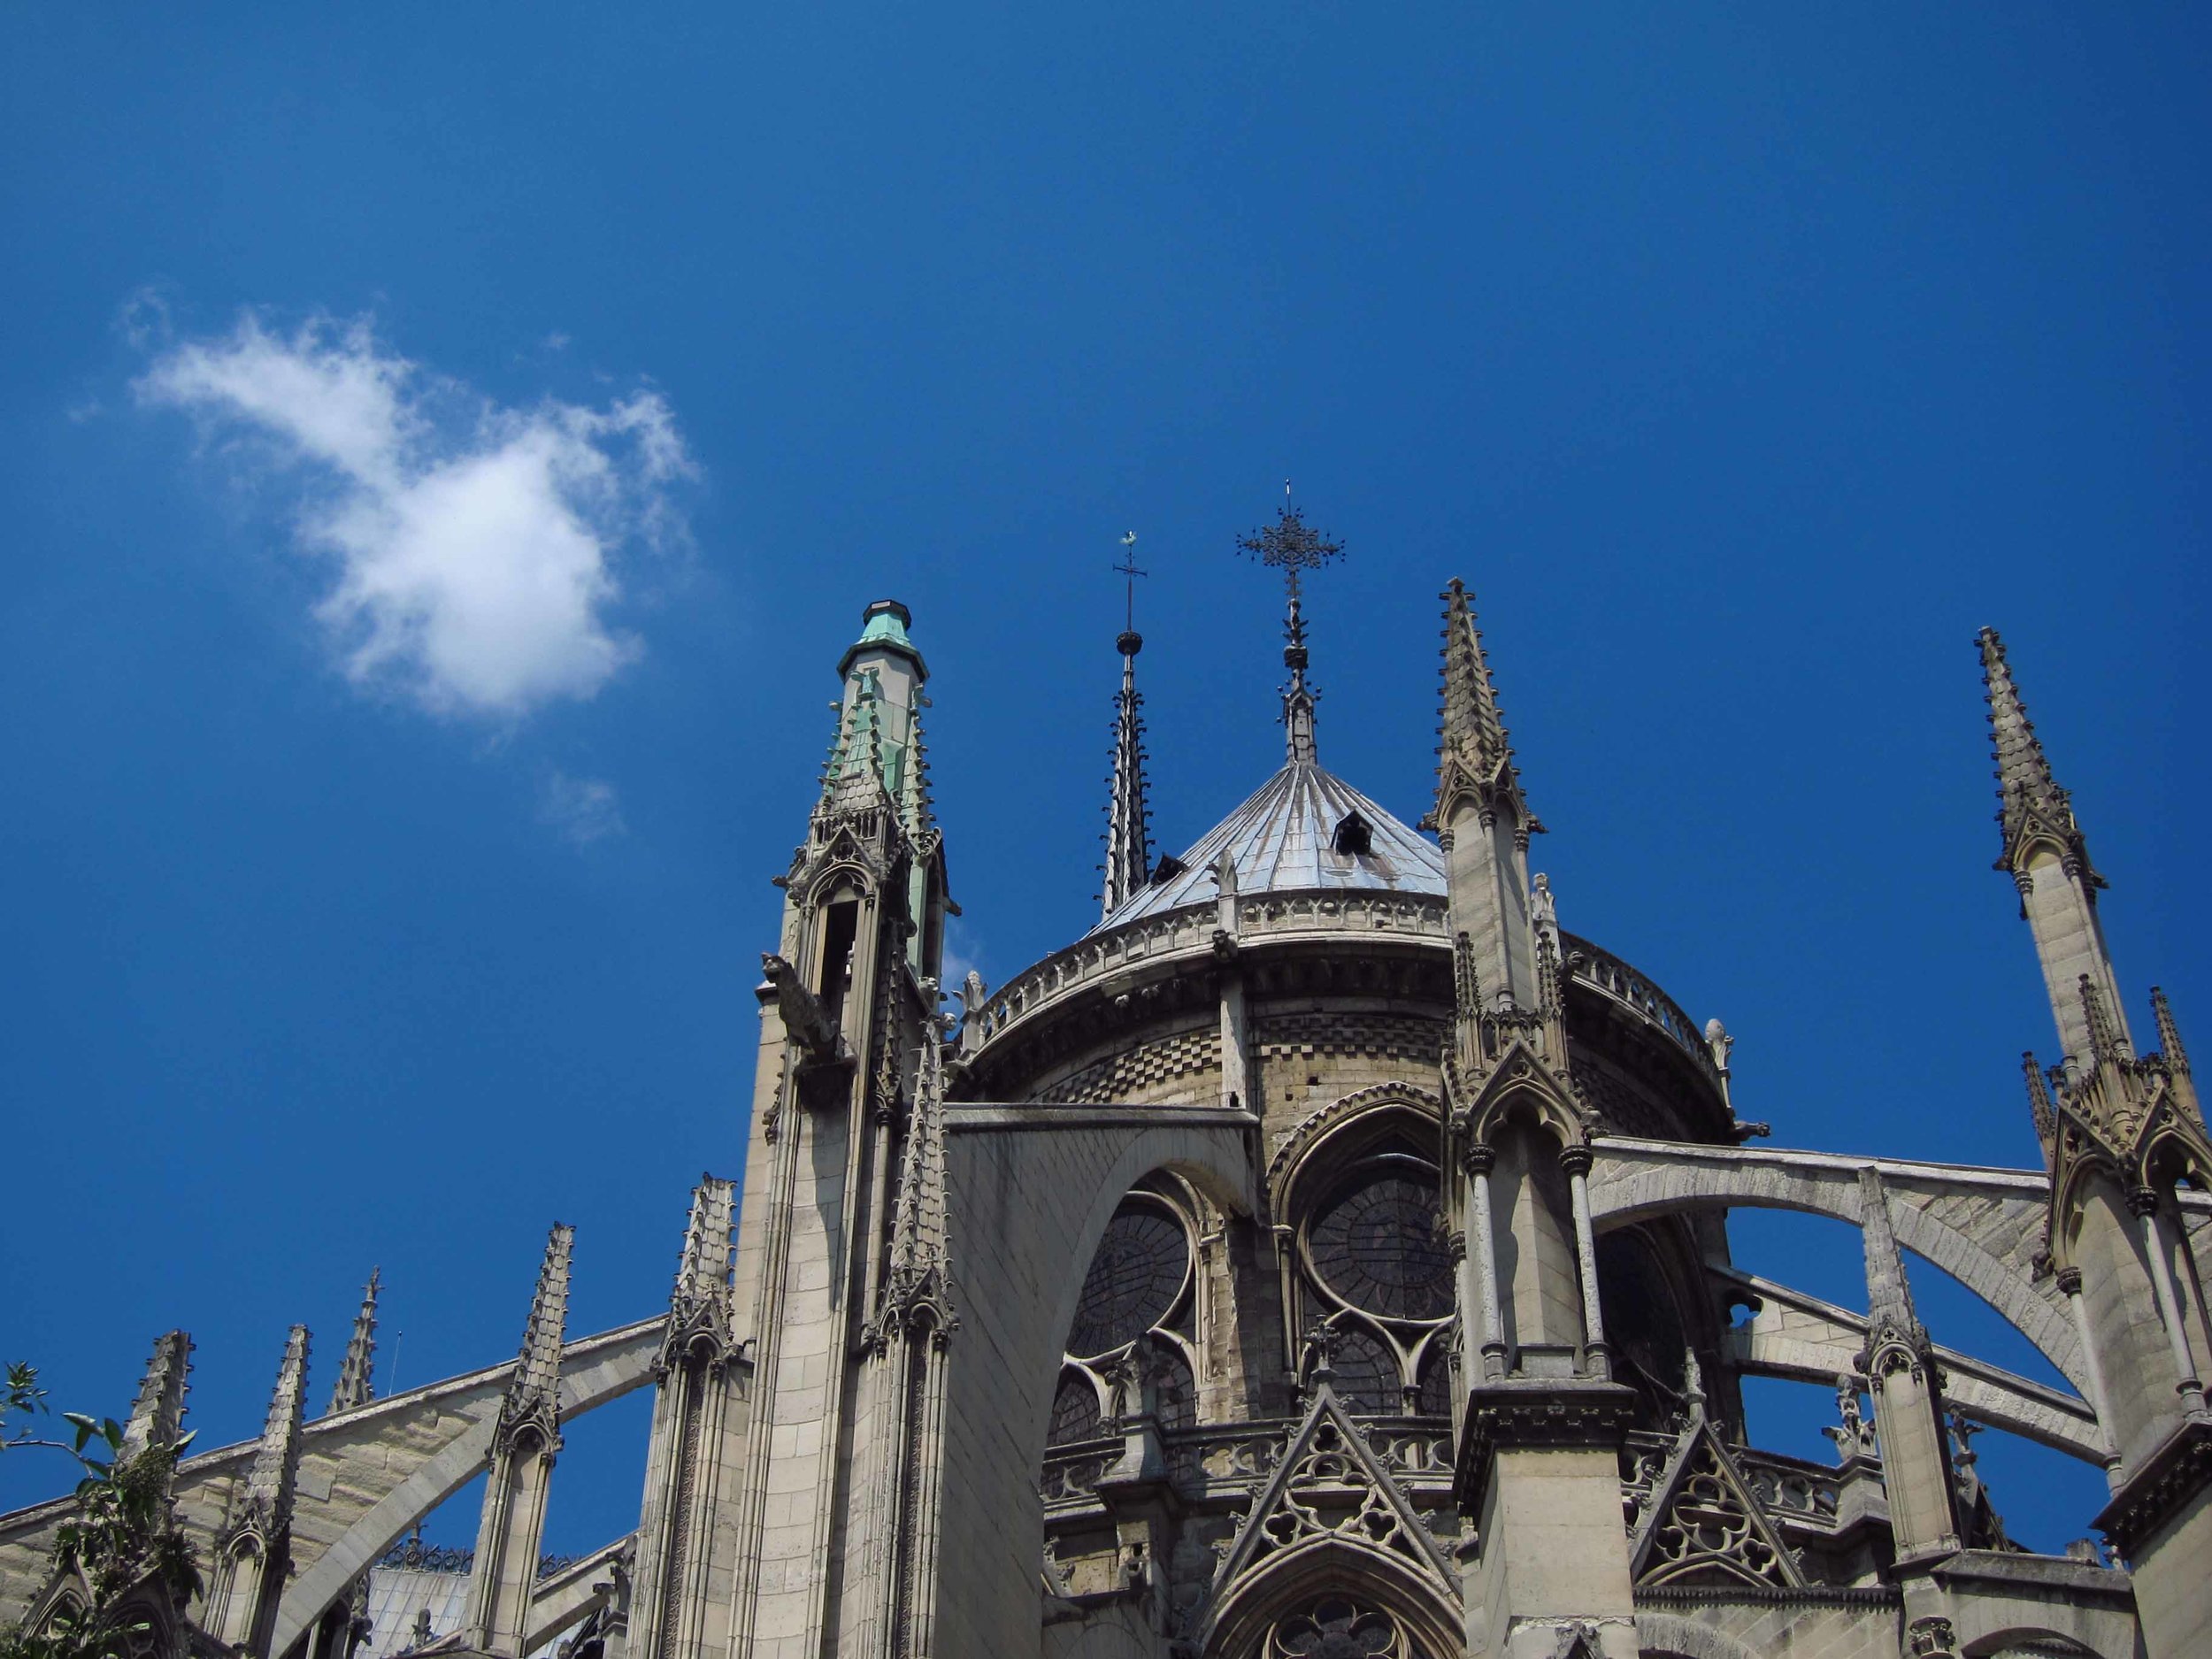    Cathédrale Notre Dame de Paris, Île de la Cité   